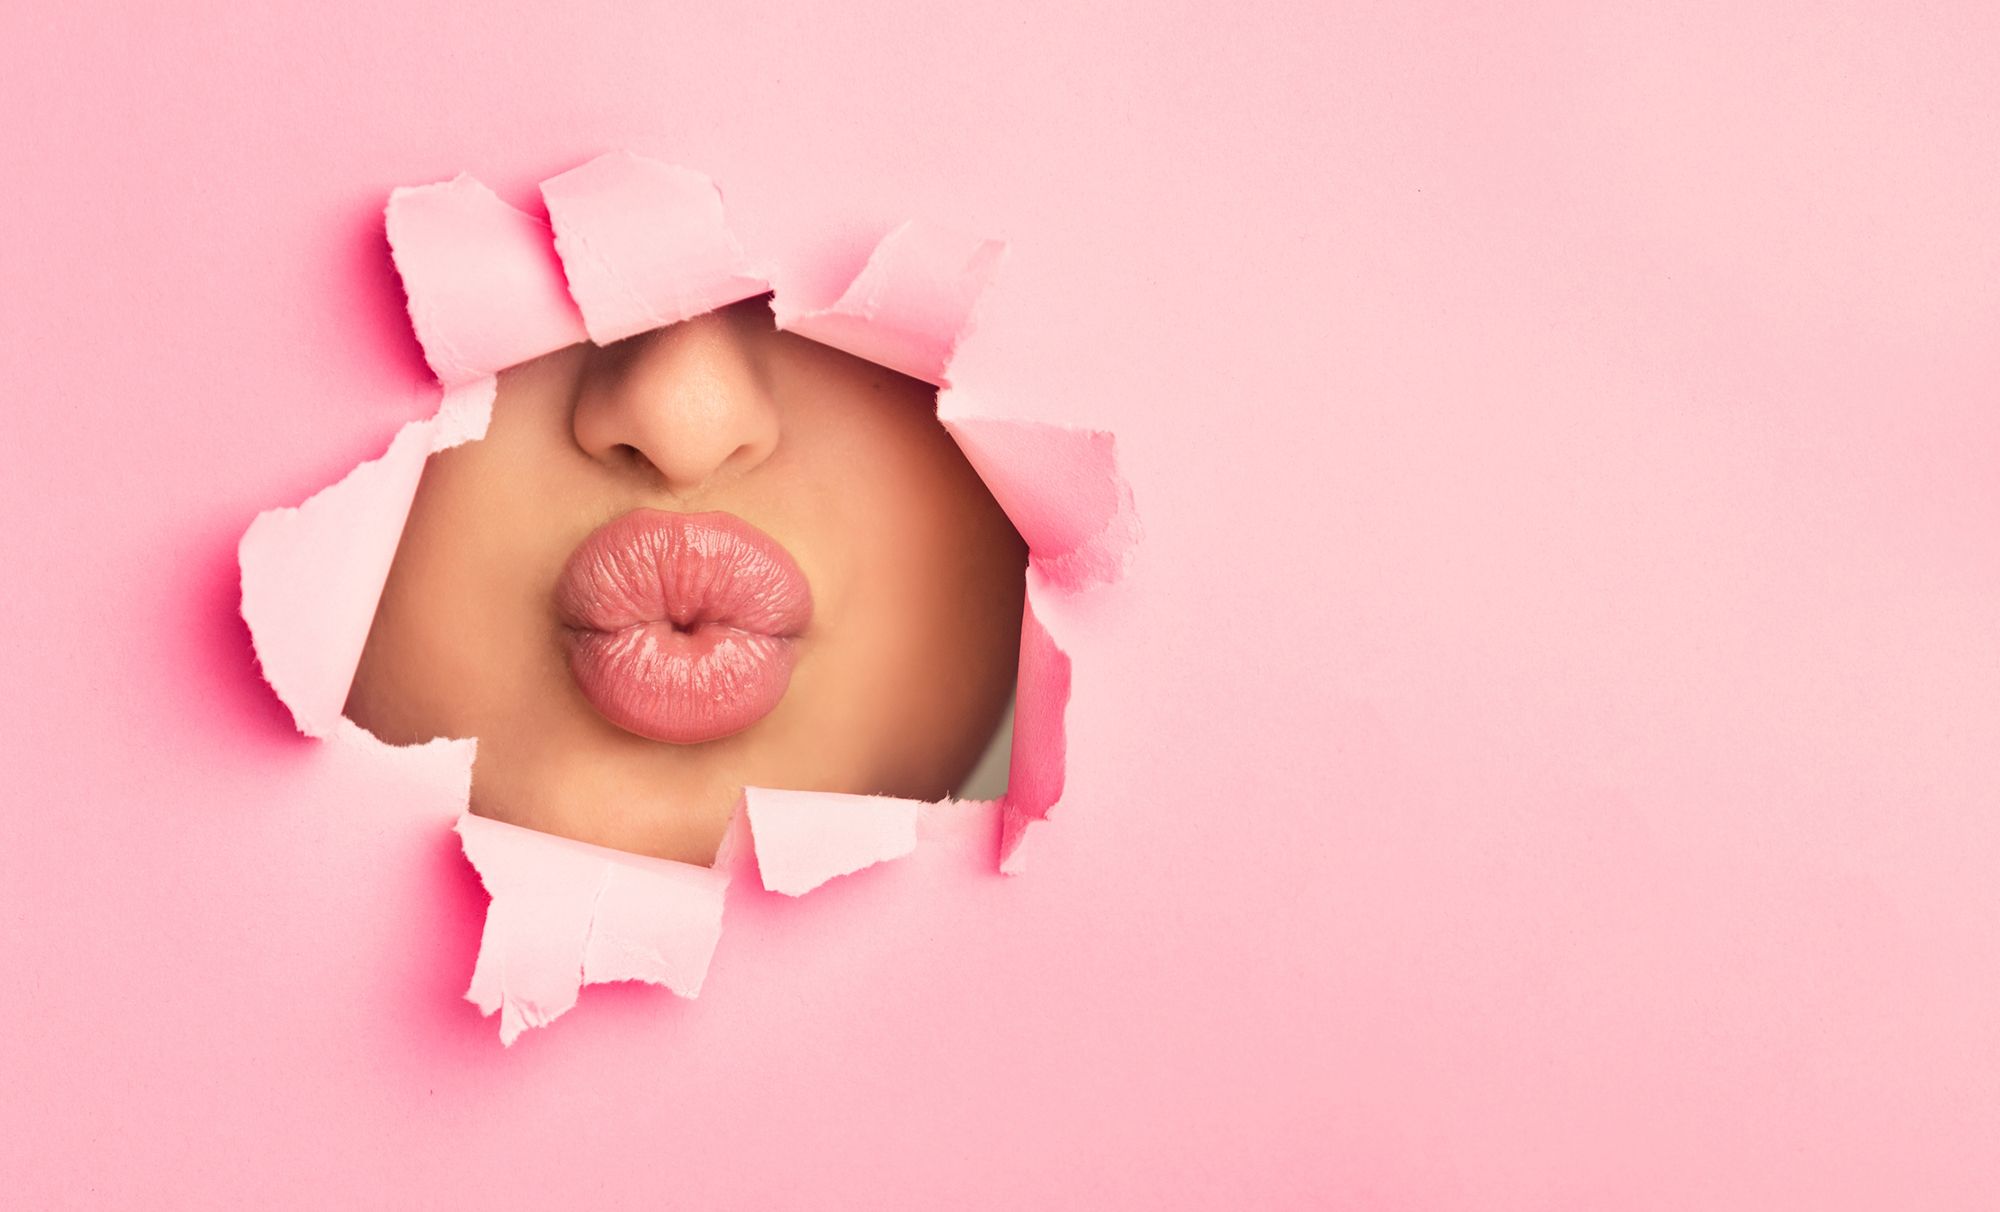 Kussmund einer Frau, der durch ein Loch in einer pinken Papierwand sichtbar ist